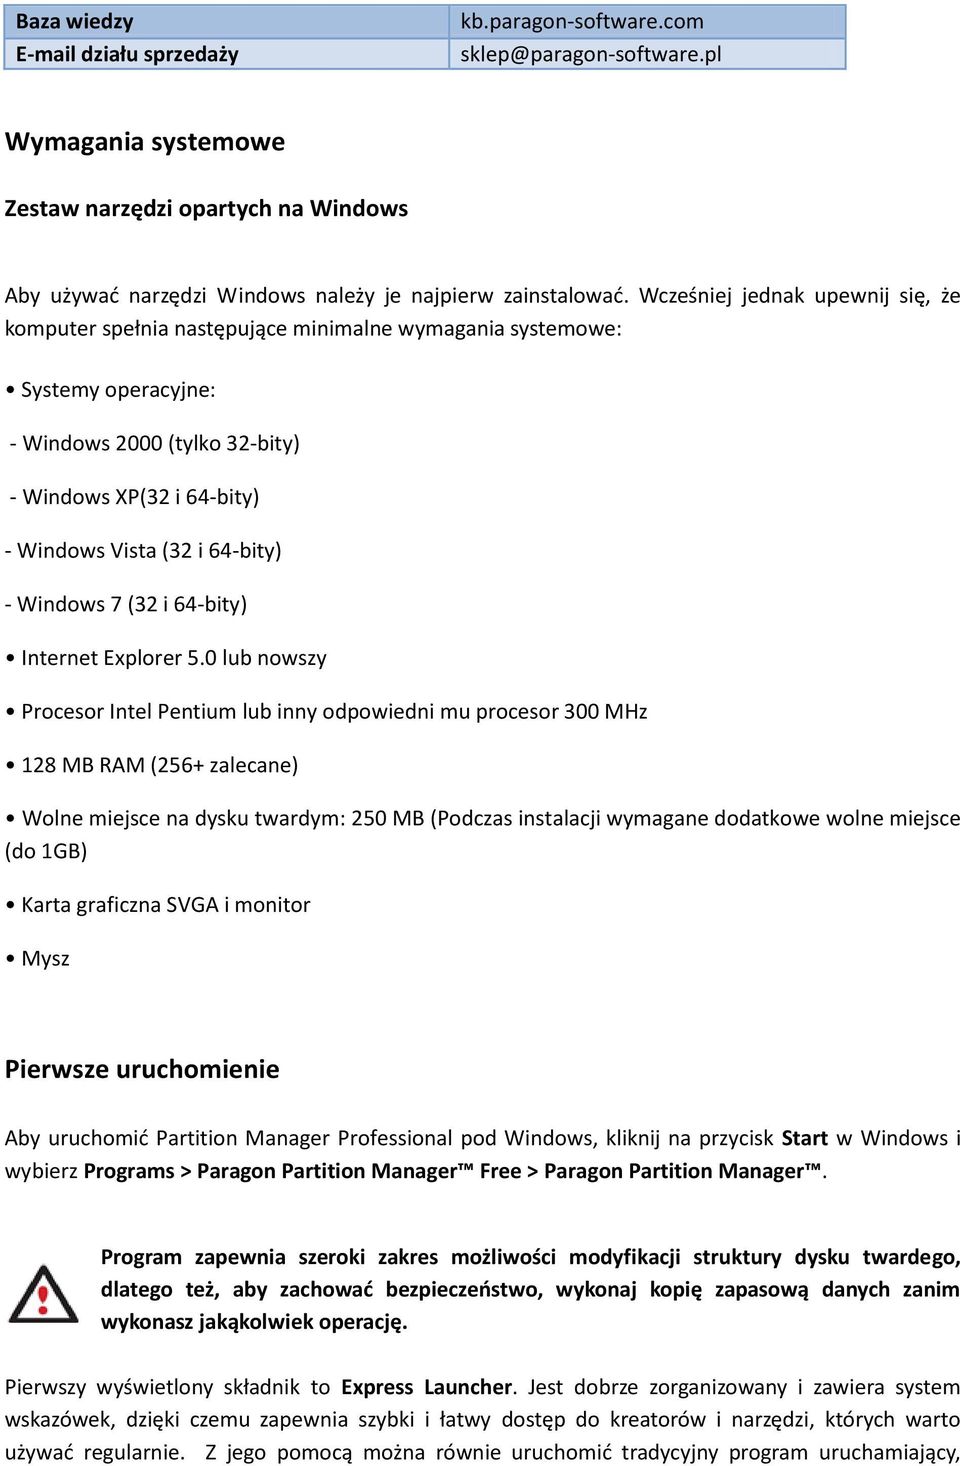 Wcześniej jednak upewnij się, że komputer spełnia następujące minimalne wymagania systemowe: Systemy operacyjne: - Windows 2000 (tylko 32-bity) - Windows XP(32 i 64-bity) - Windows Vista (32 i